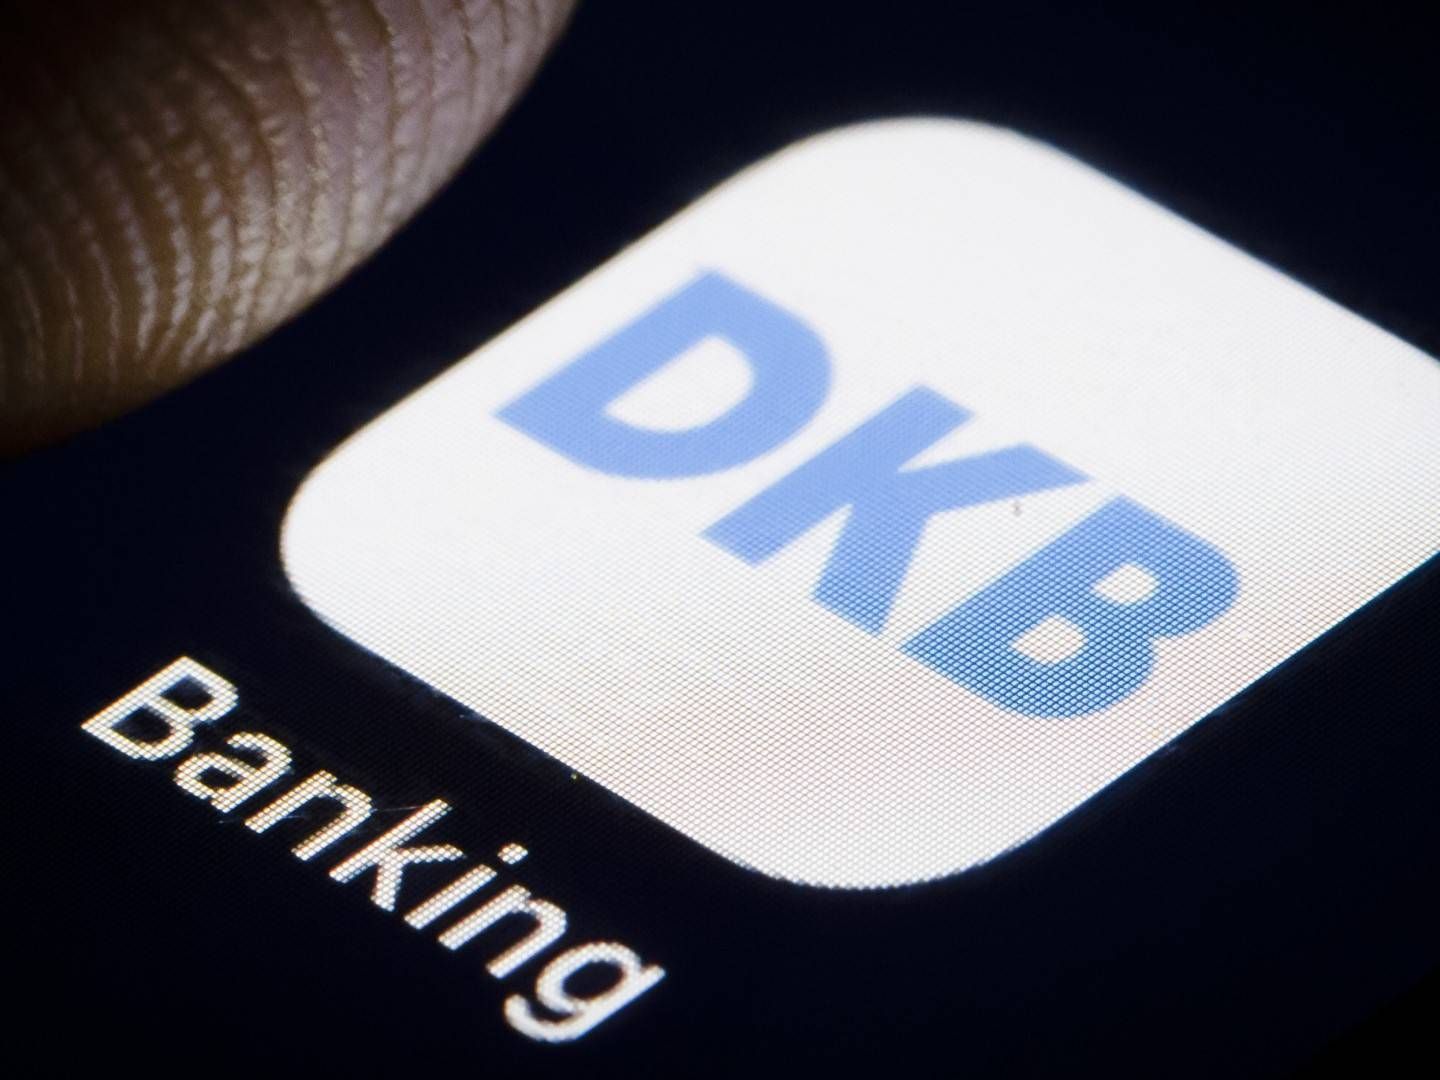 Logo der DKB auf einem Smartphone (Symbolbild) | Foto: picture alliance / photothek | Thomas Trutschel